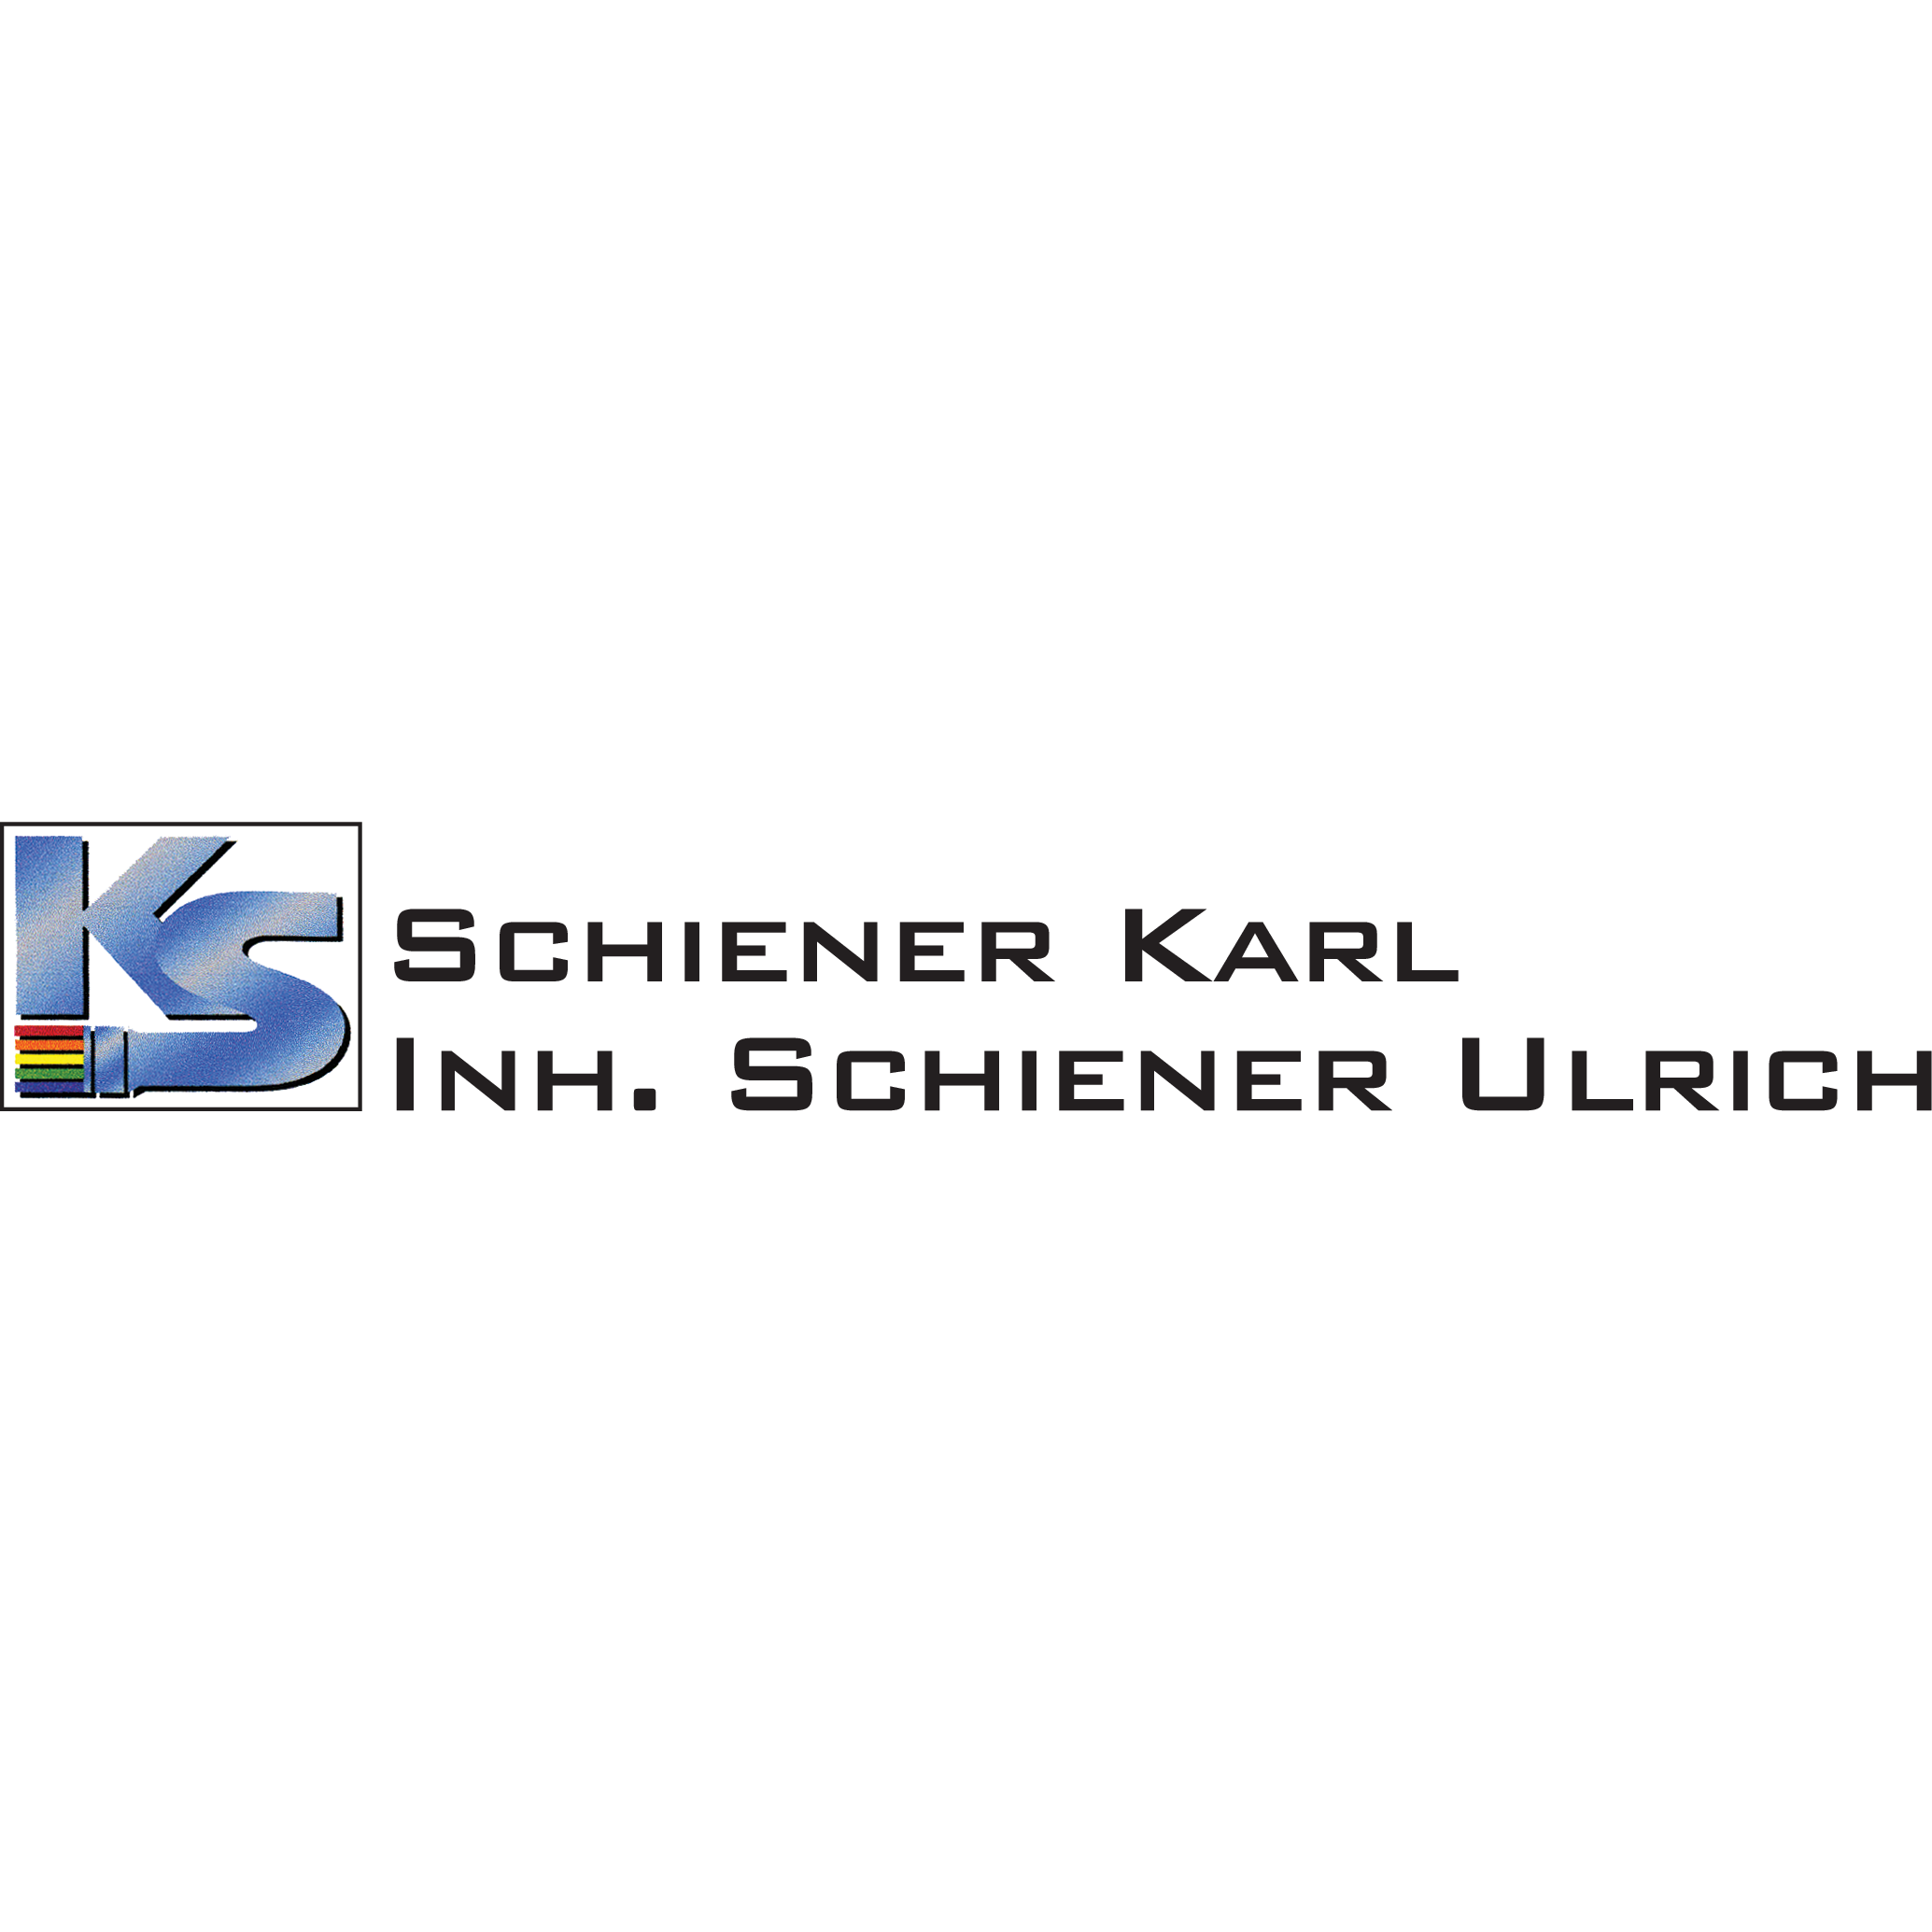 Schiener Karl Inh. Schiener Ulrich in Johannesberg in Unterfranken - Logo